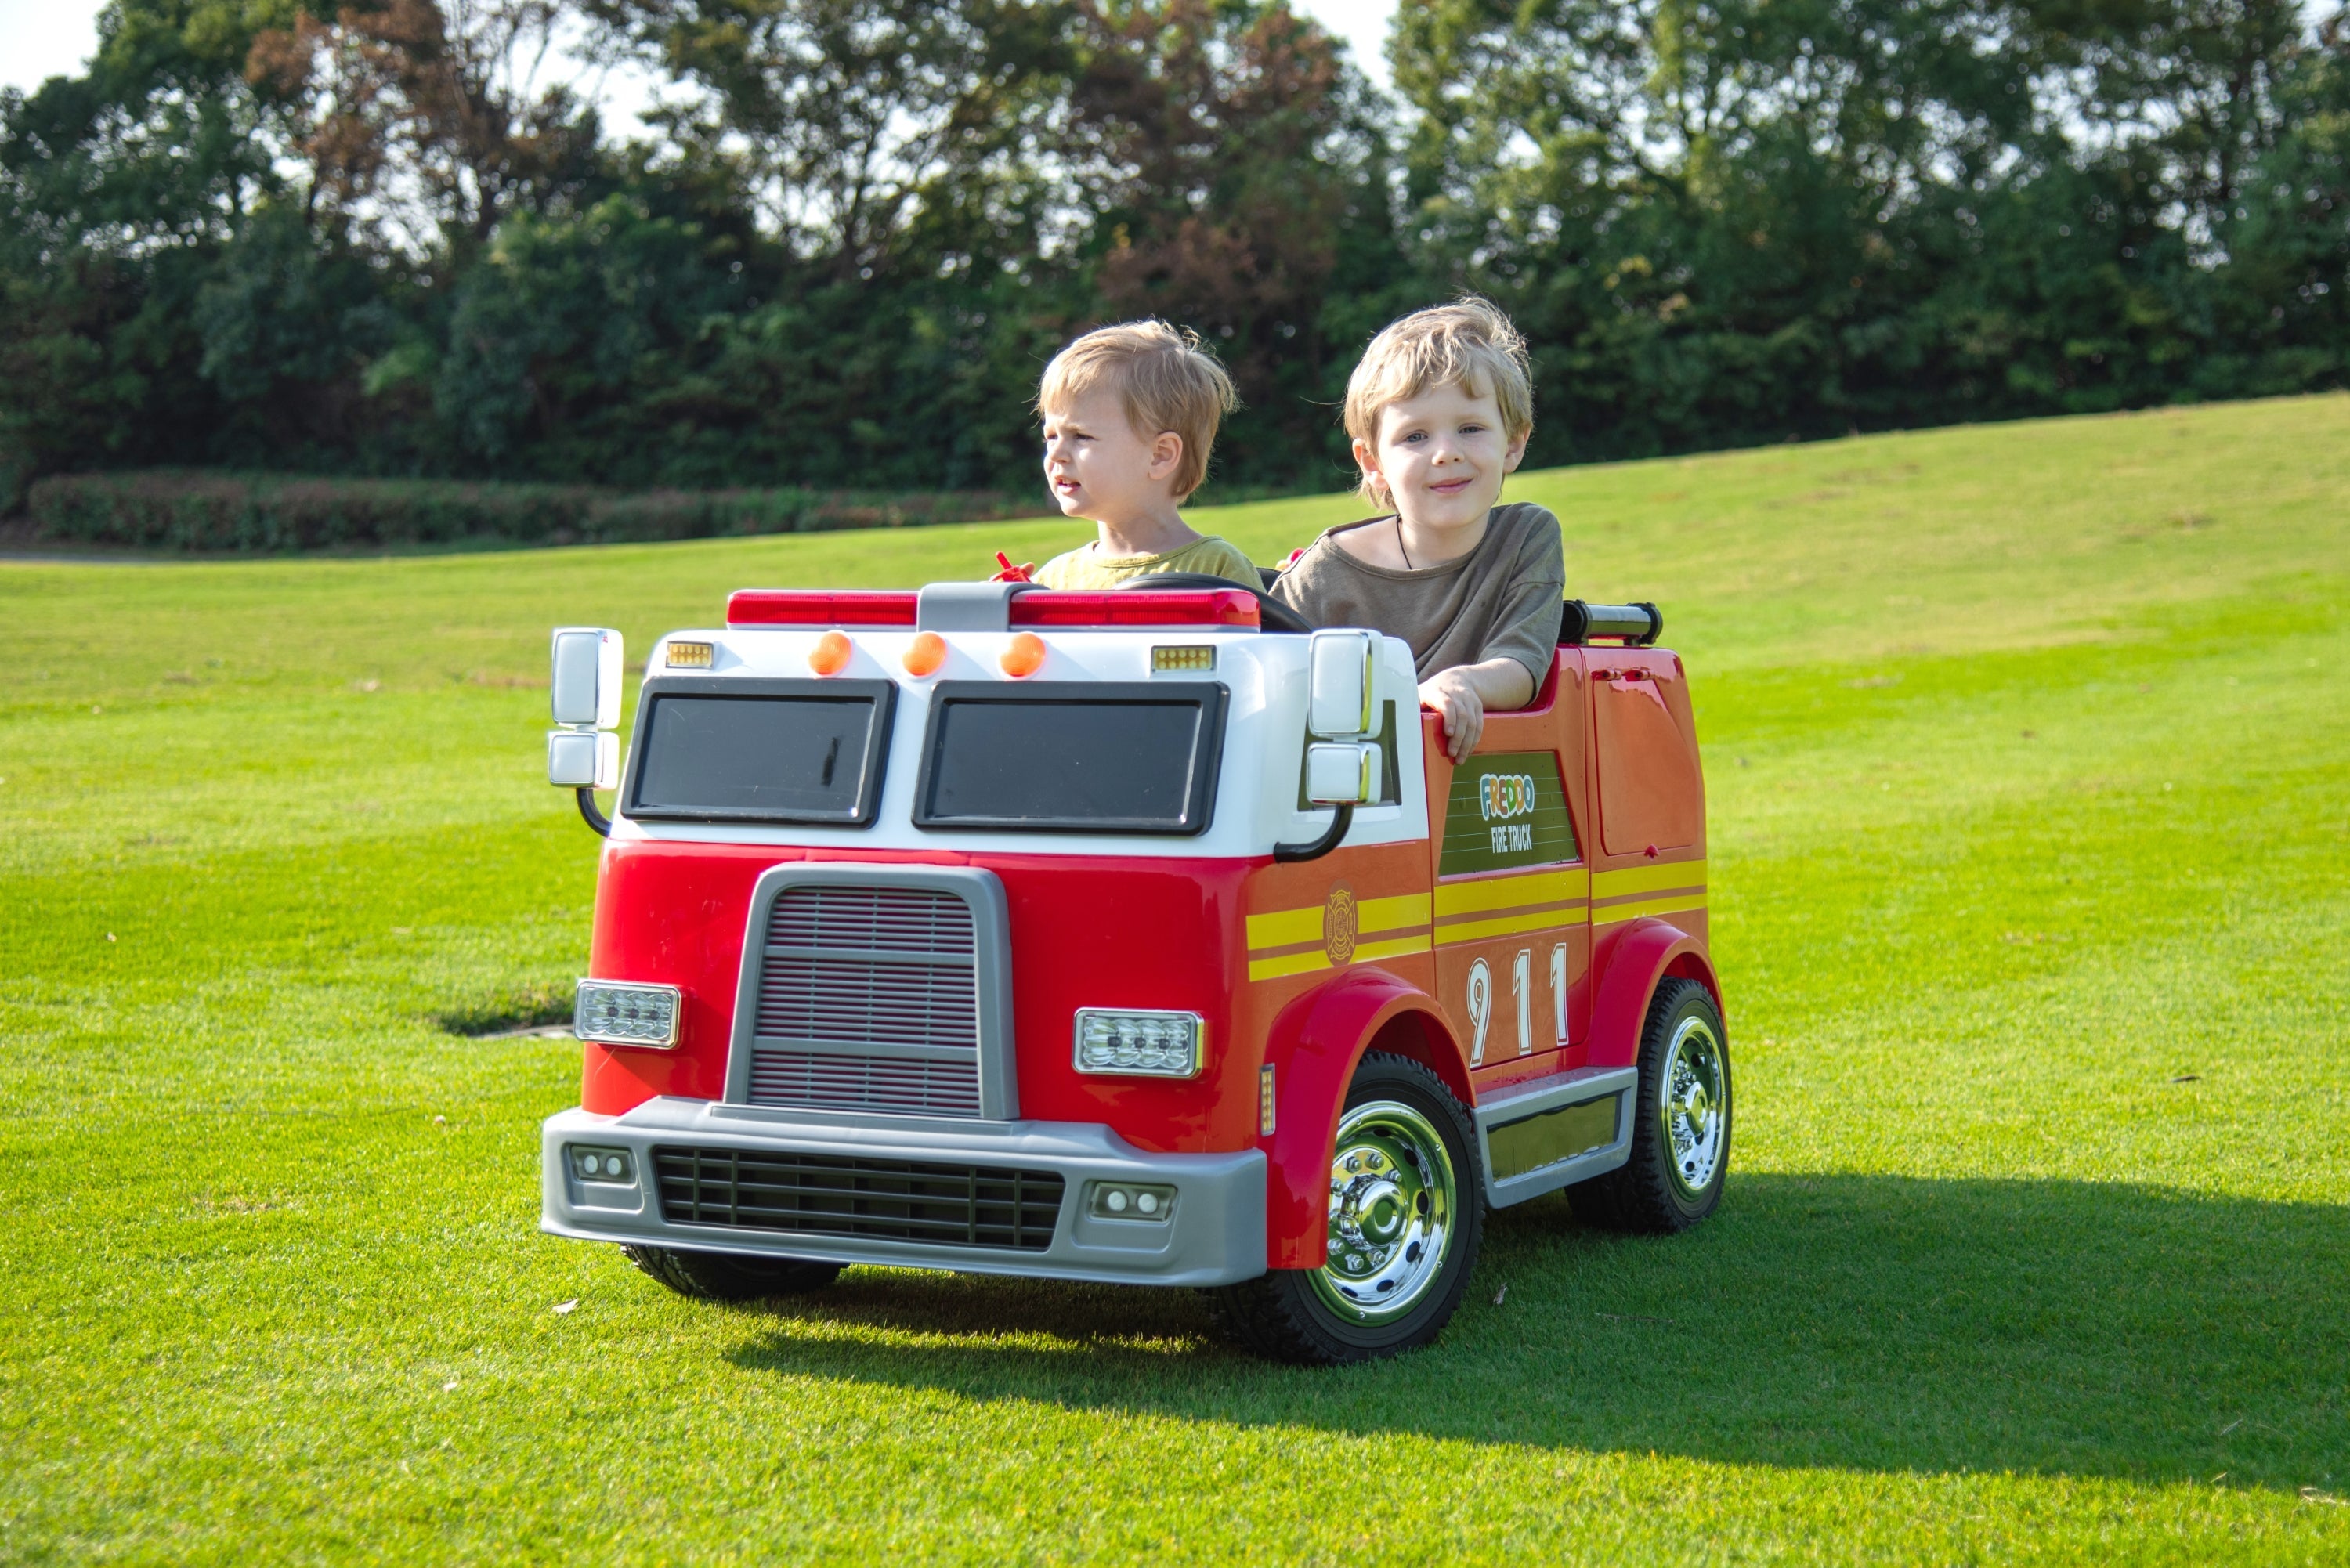 24V Freddo Fire Truck 2-Seater Ride on